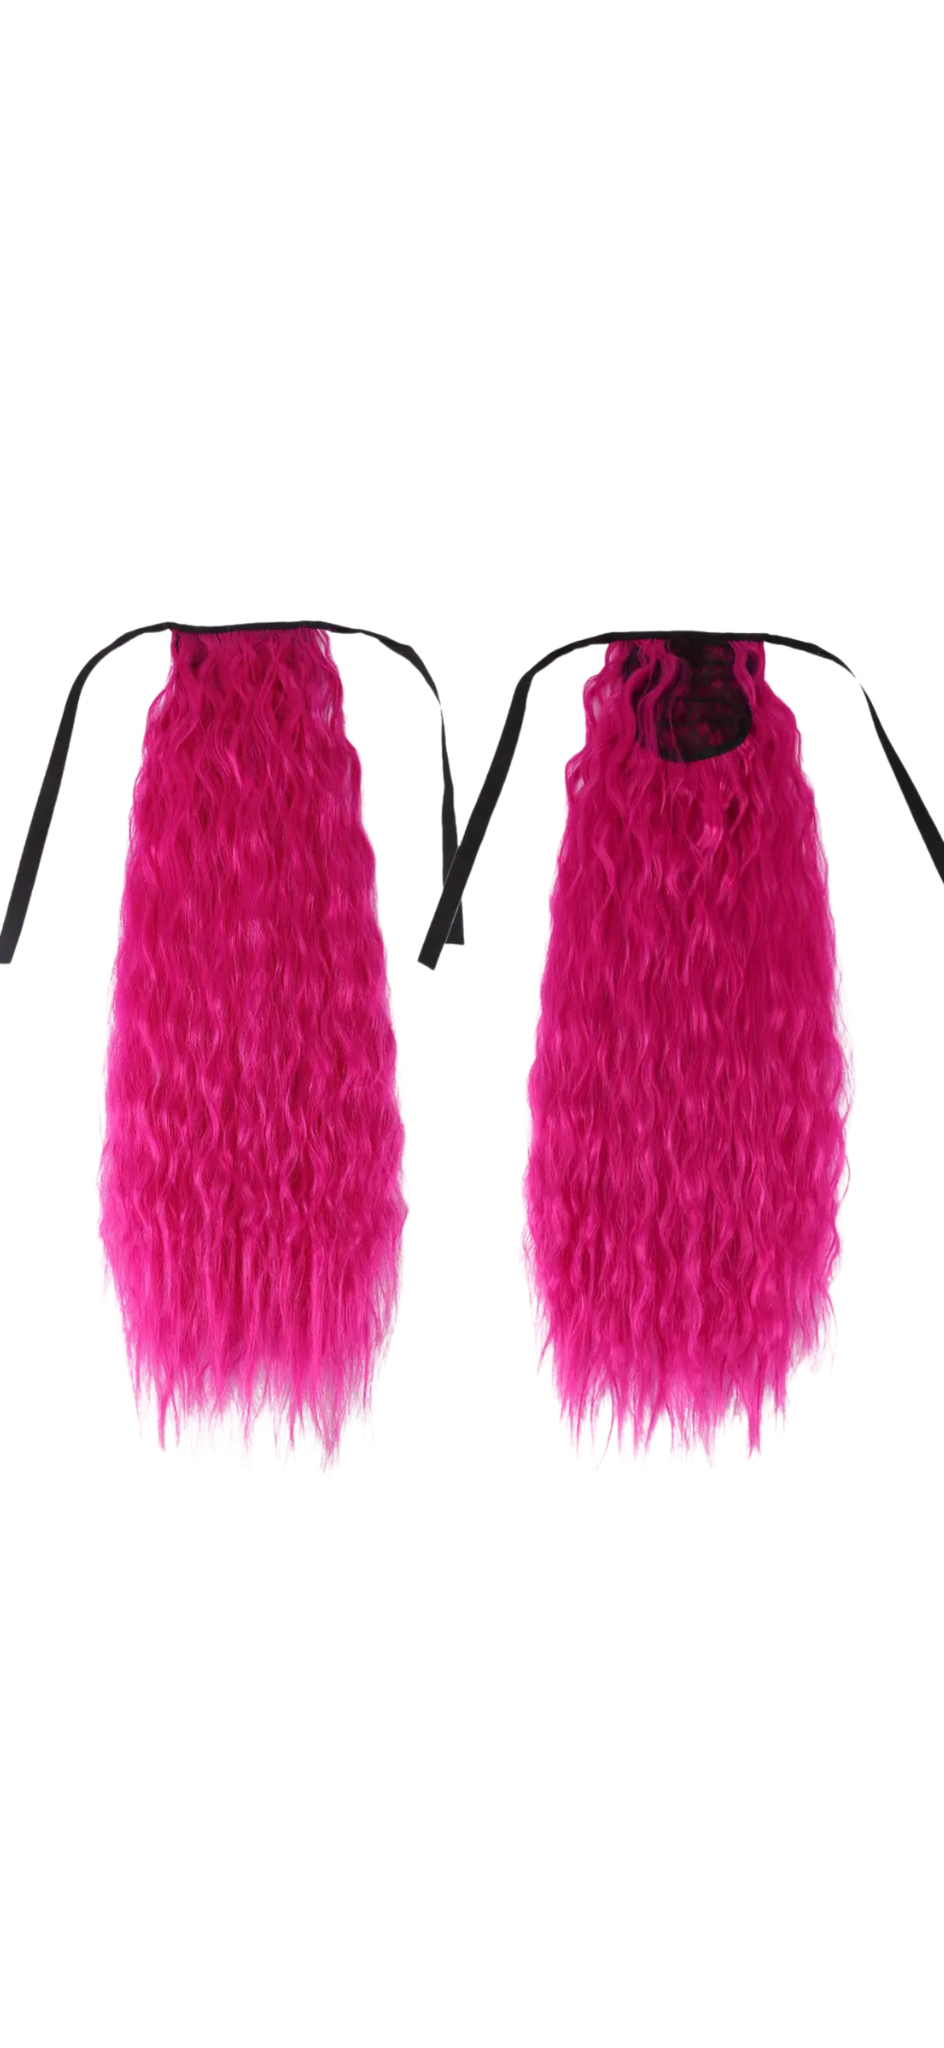 Barbie pink mermaid hair ponytail